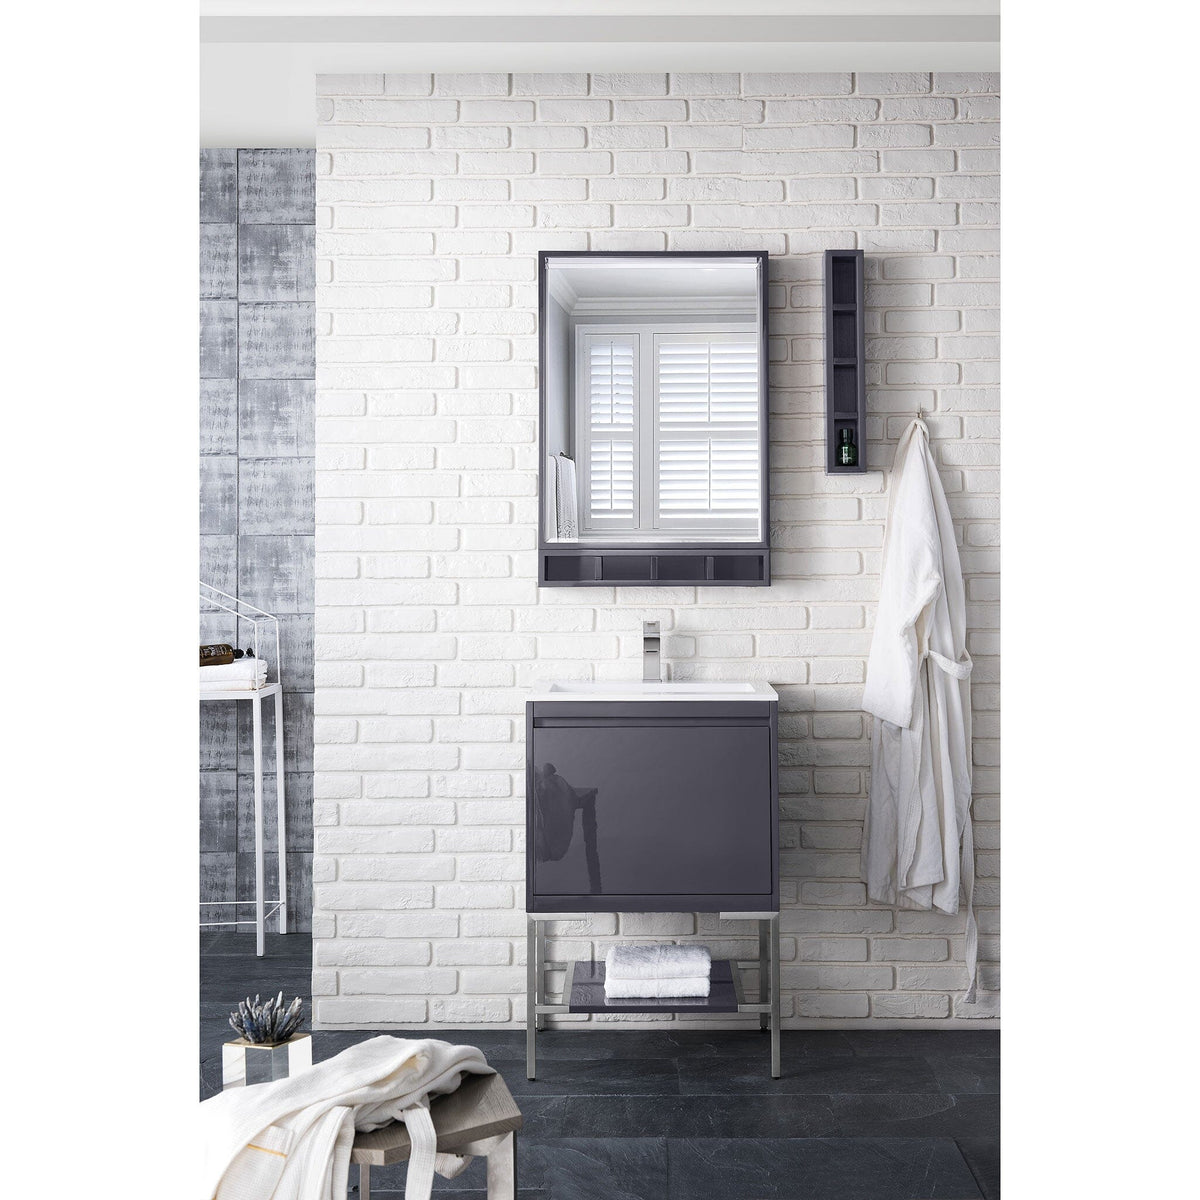 23.6" Milan Single Bathroom Vanity, Modern Gray Glossy w/ Brushed Nickel Base